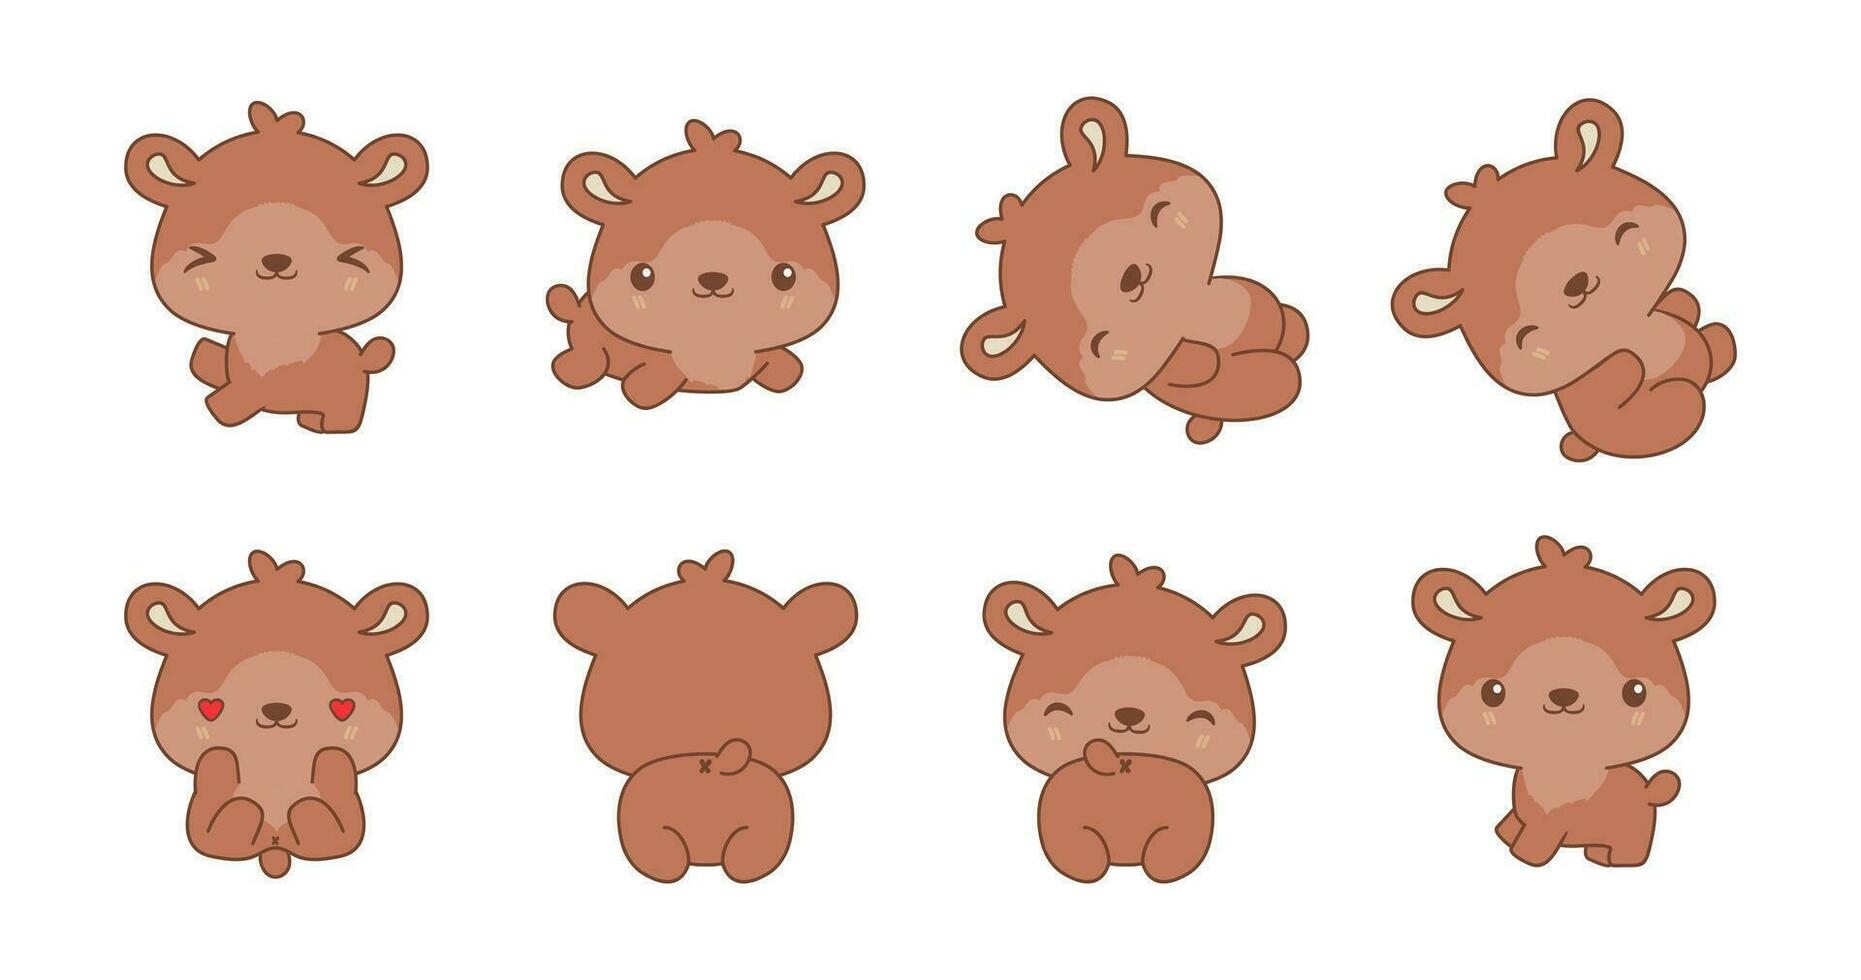 reeks van kawaii teddy beer illustratie verzameling vector